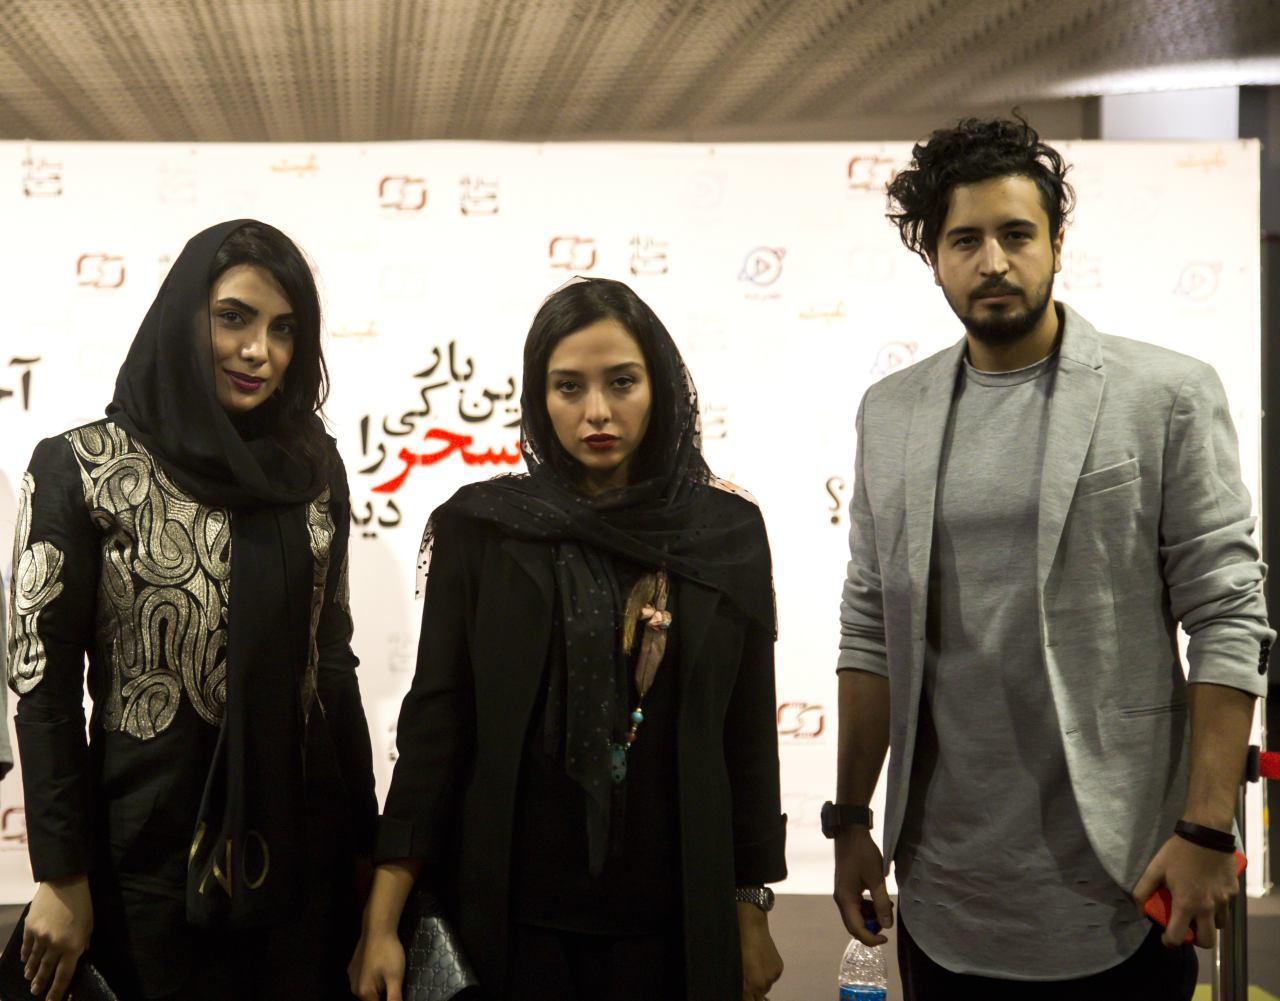 مهرداد صدیقیان در اکران افتتاحیه فیلم سینمایی آخرین بار کی سحر را دیدی؟ به همراه آناهیتا درگاهی